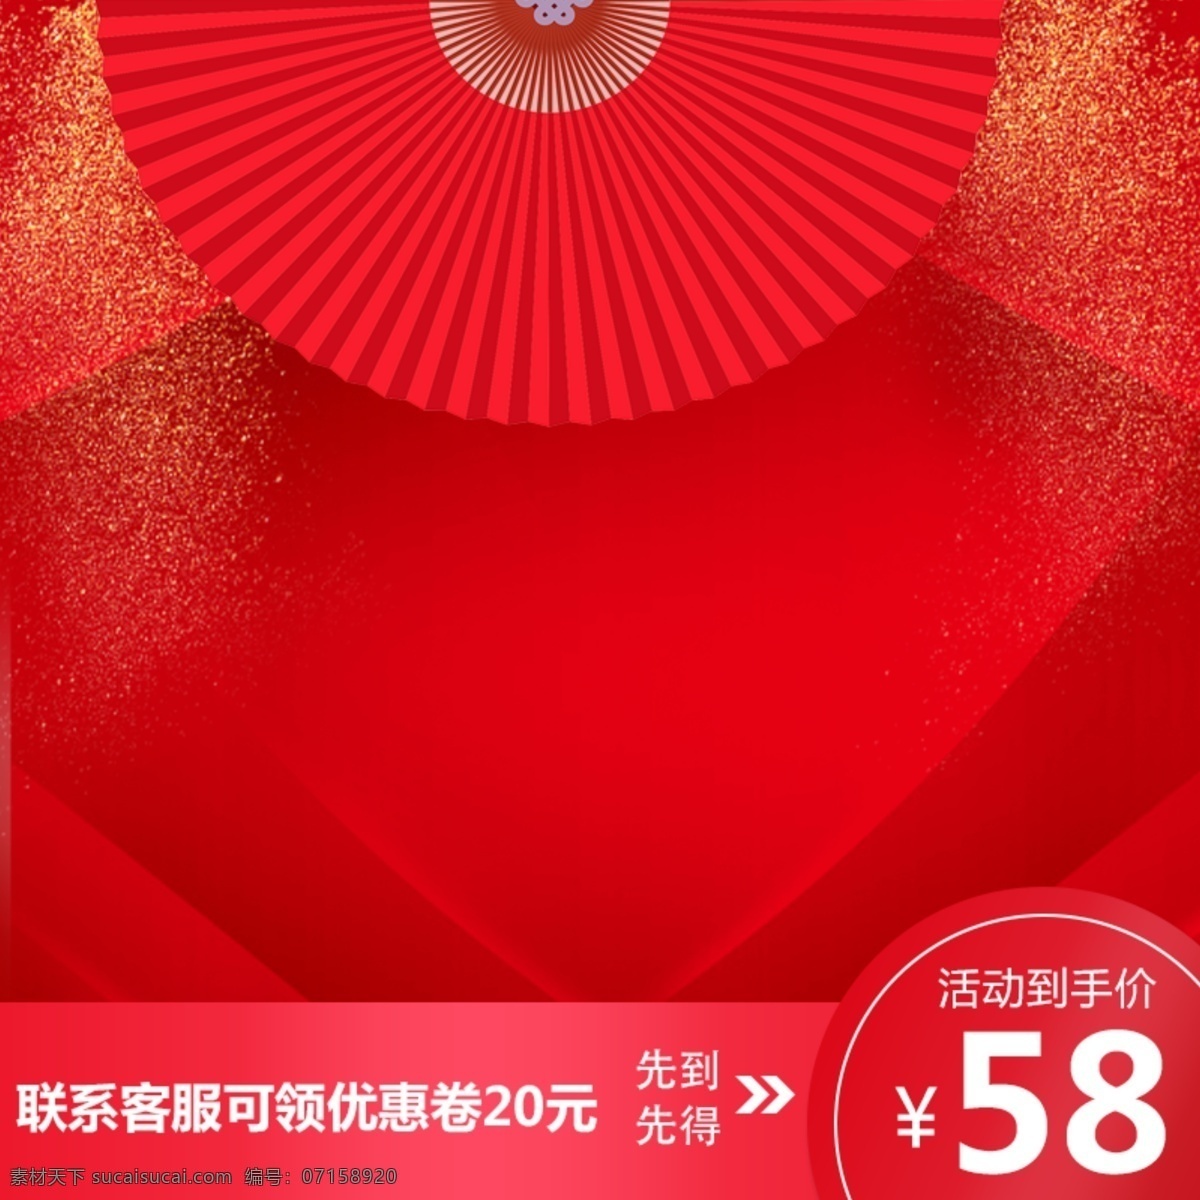 中国 风 新年 大红色 喜庆 暖 色系 产品促销 主 图 中国风 扇子 新年主图 过年素材 年货节素材 年 货主 模板 年货 节 过年素材主图 年货节不打烊